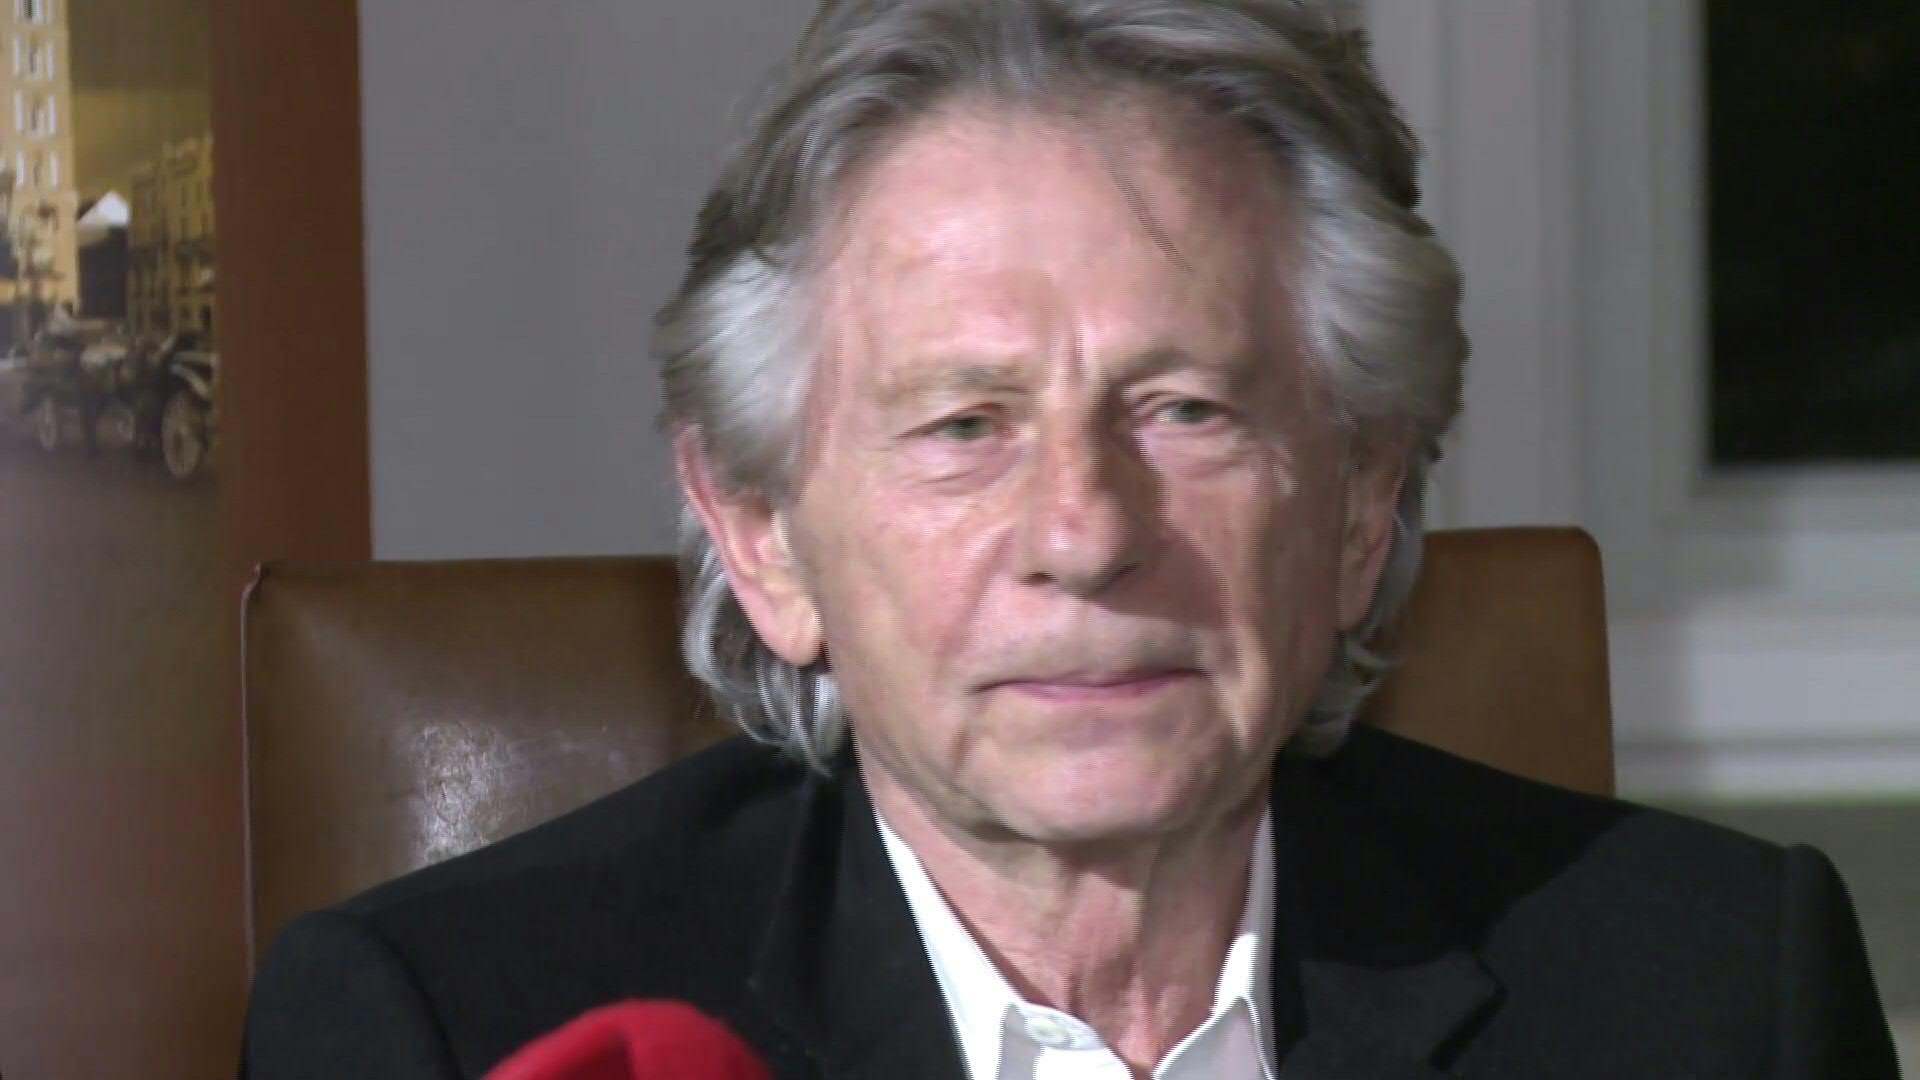 Polanski admitió el cargo de violación estatutaria después de que fueran retirados una serie de faltas más graves. Pasó 48 días detenido para ser sometido a una evaluación psiquiátrica y luego fue liberado. (AFP)